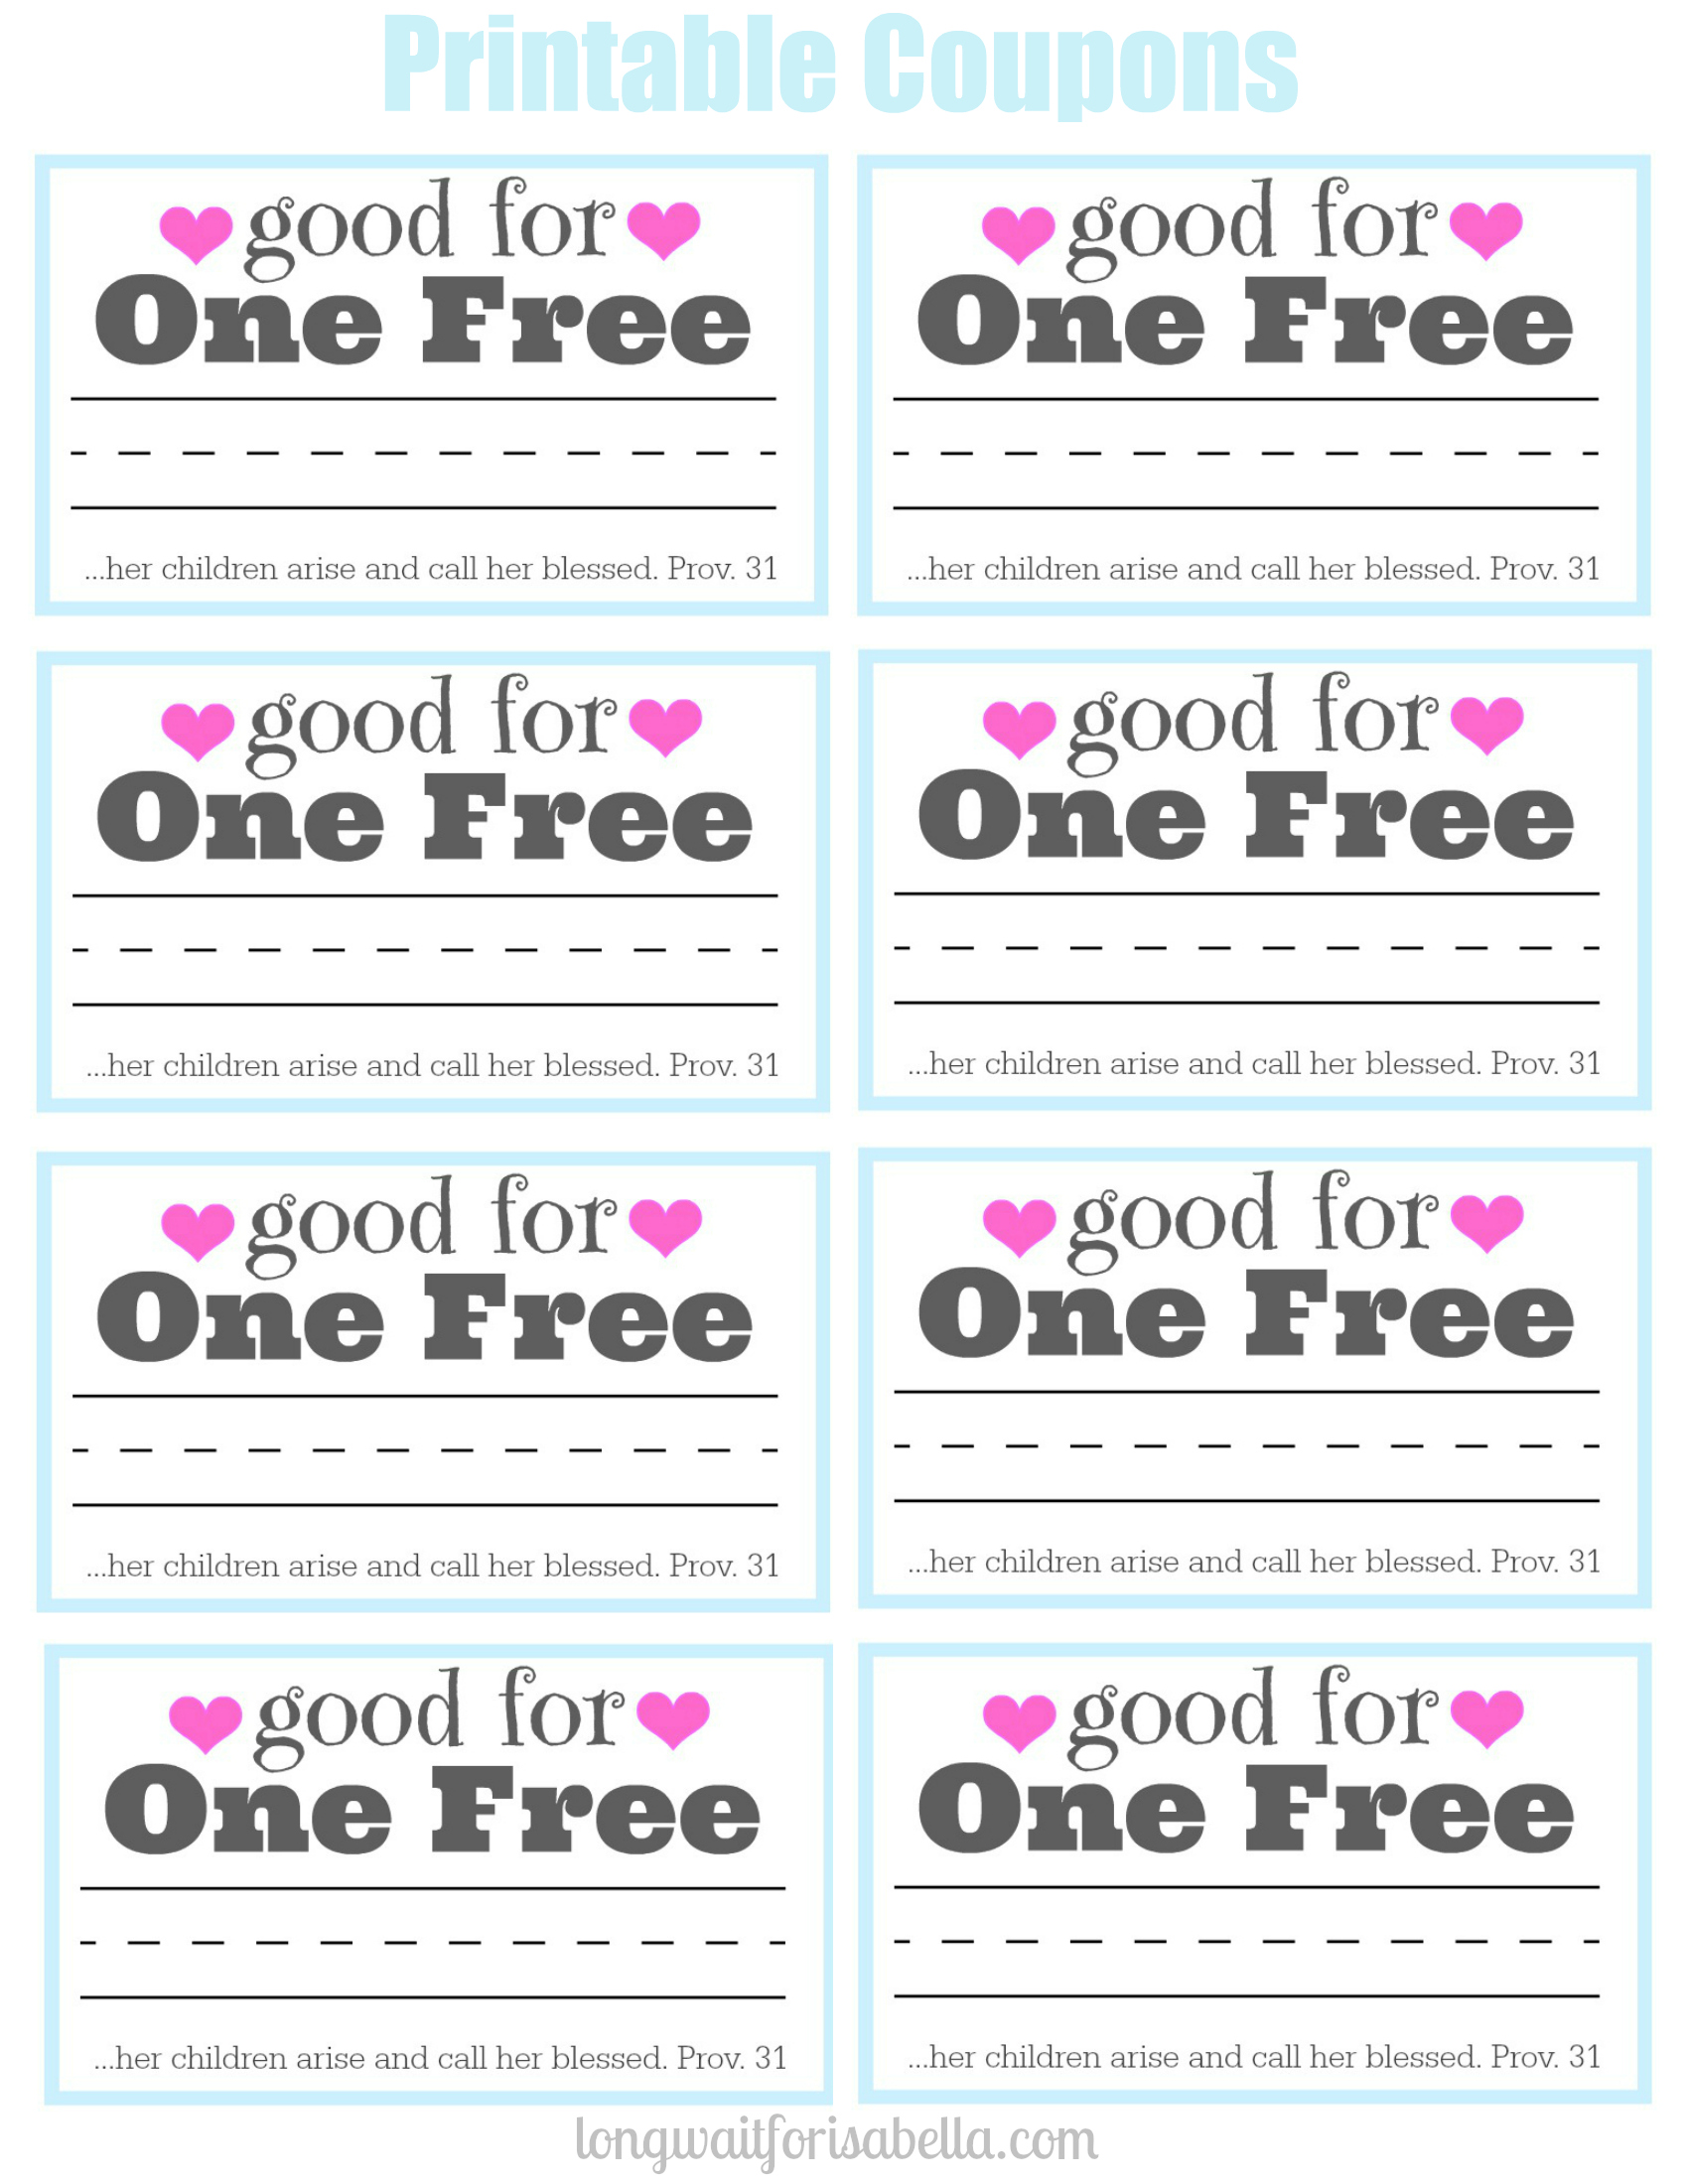 free-sample-coupons-printable-free-printable